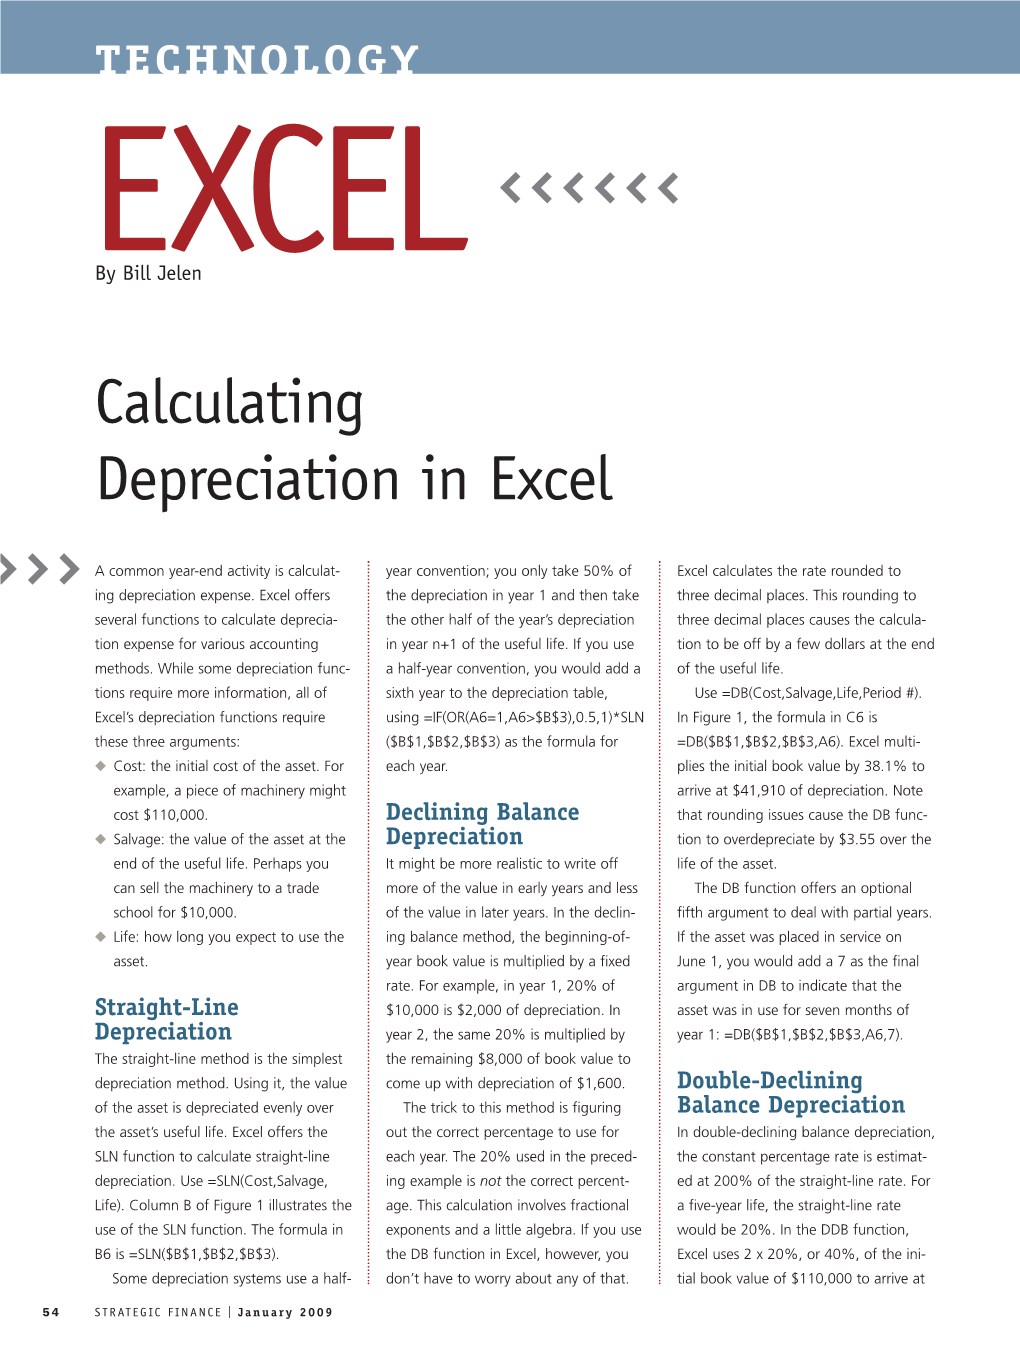 Calculating Depreciation in Excel